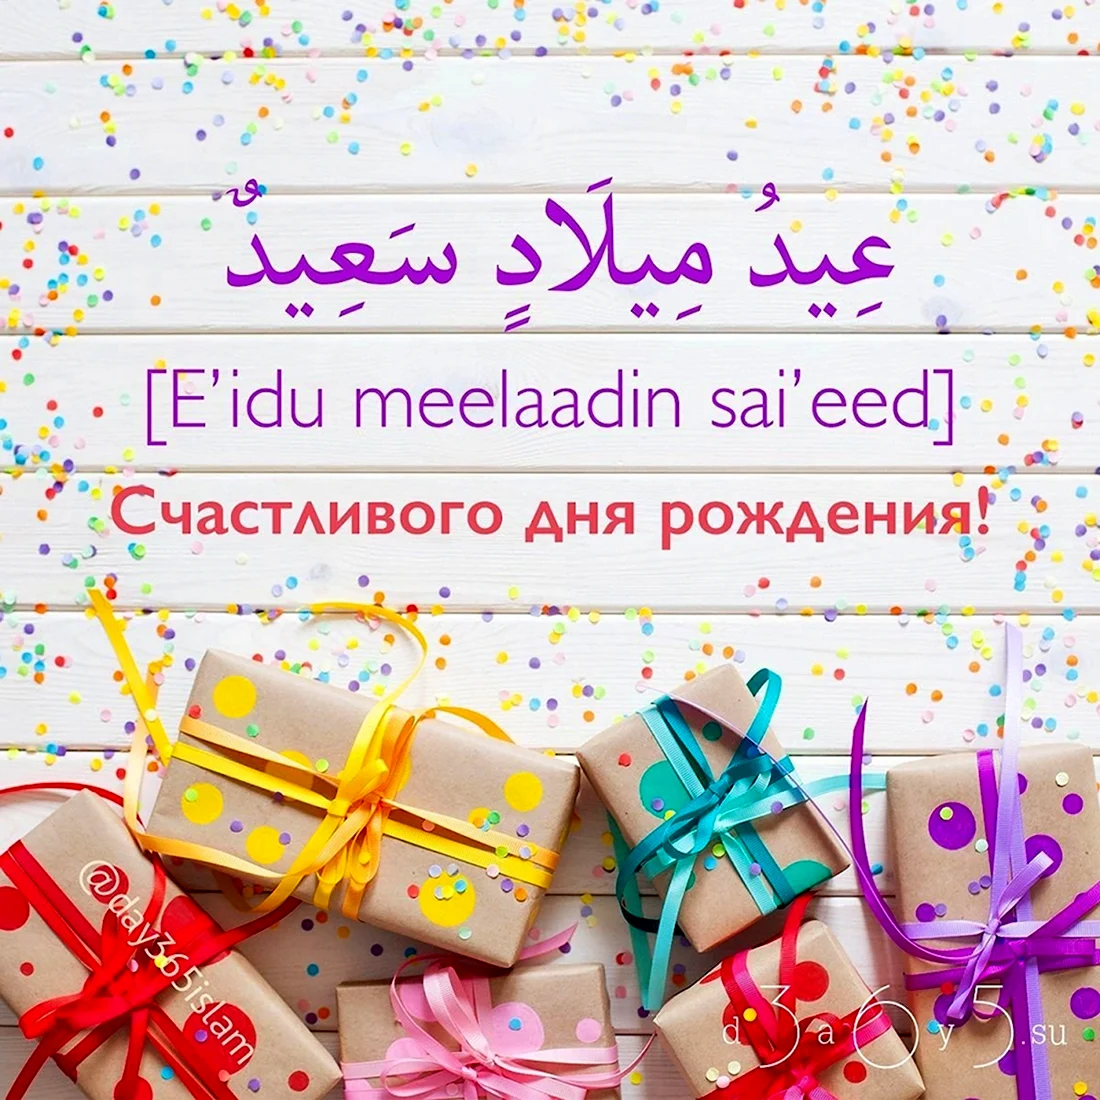 Мусульманские поздравления с днем рождения. Открытка с Днем рождения. Поздравление с Днем рождения